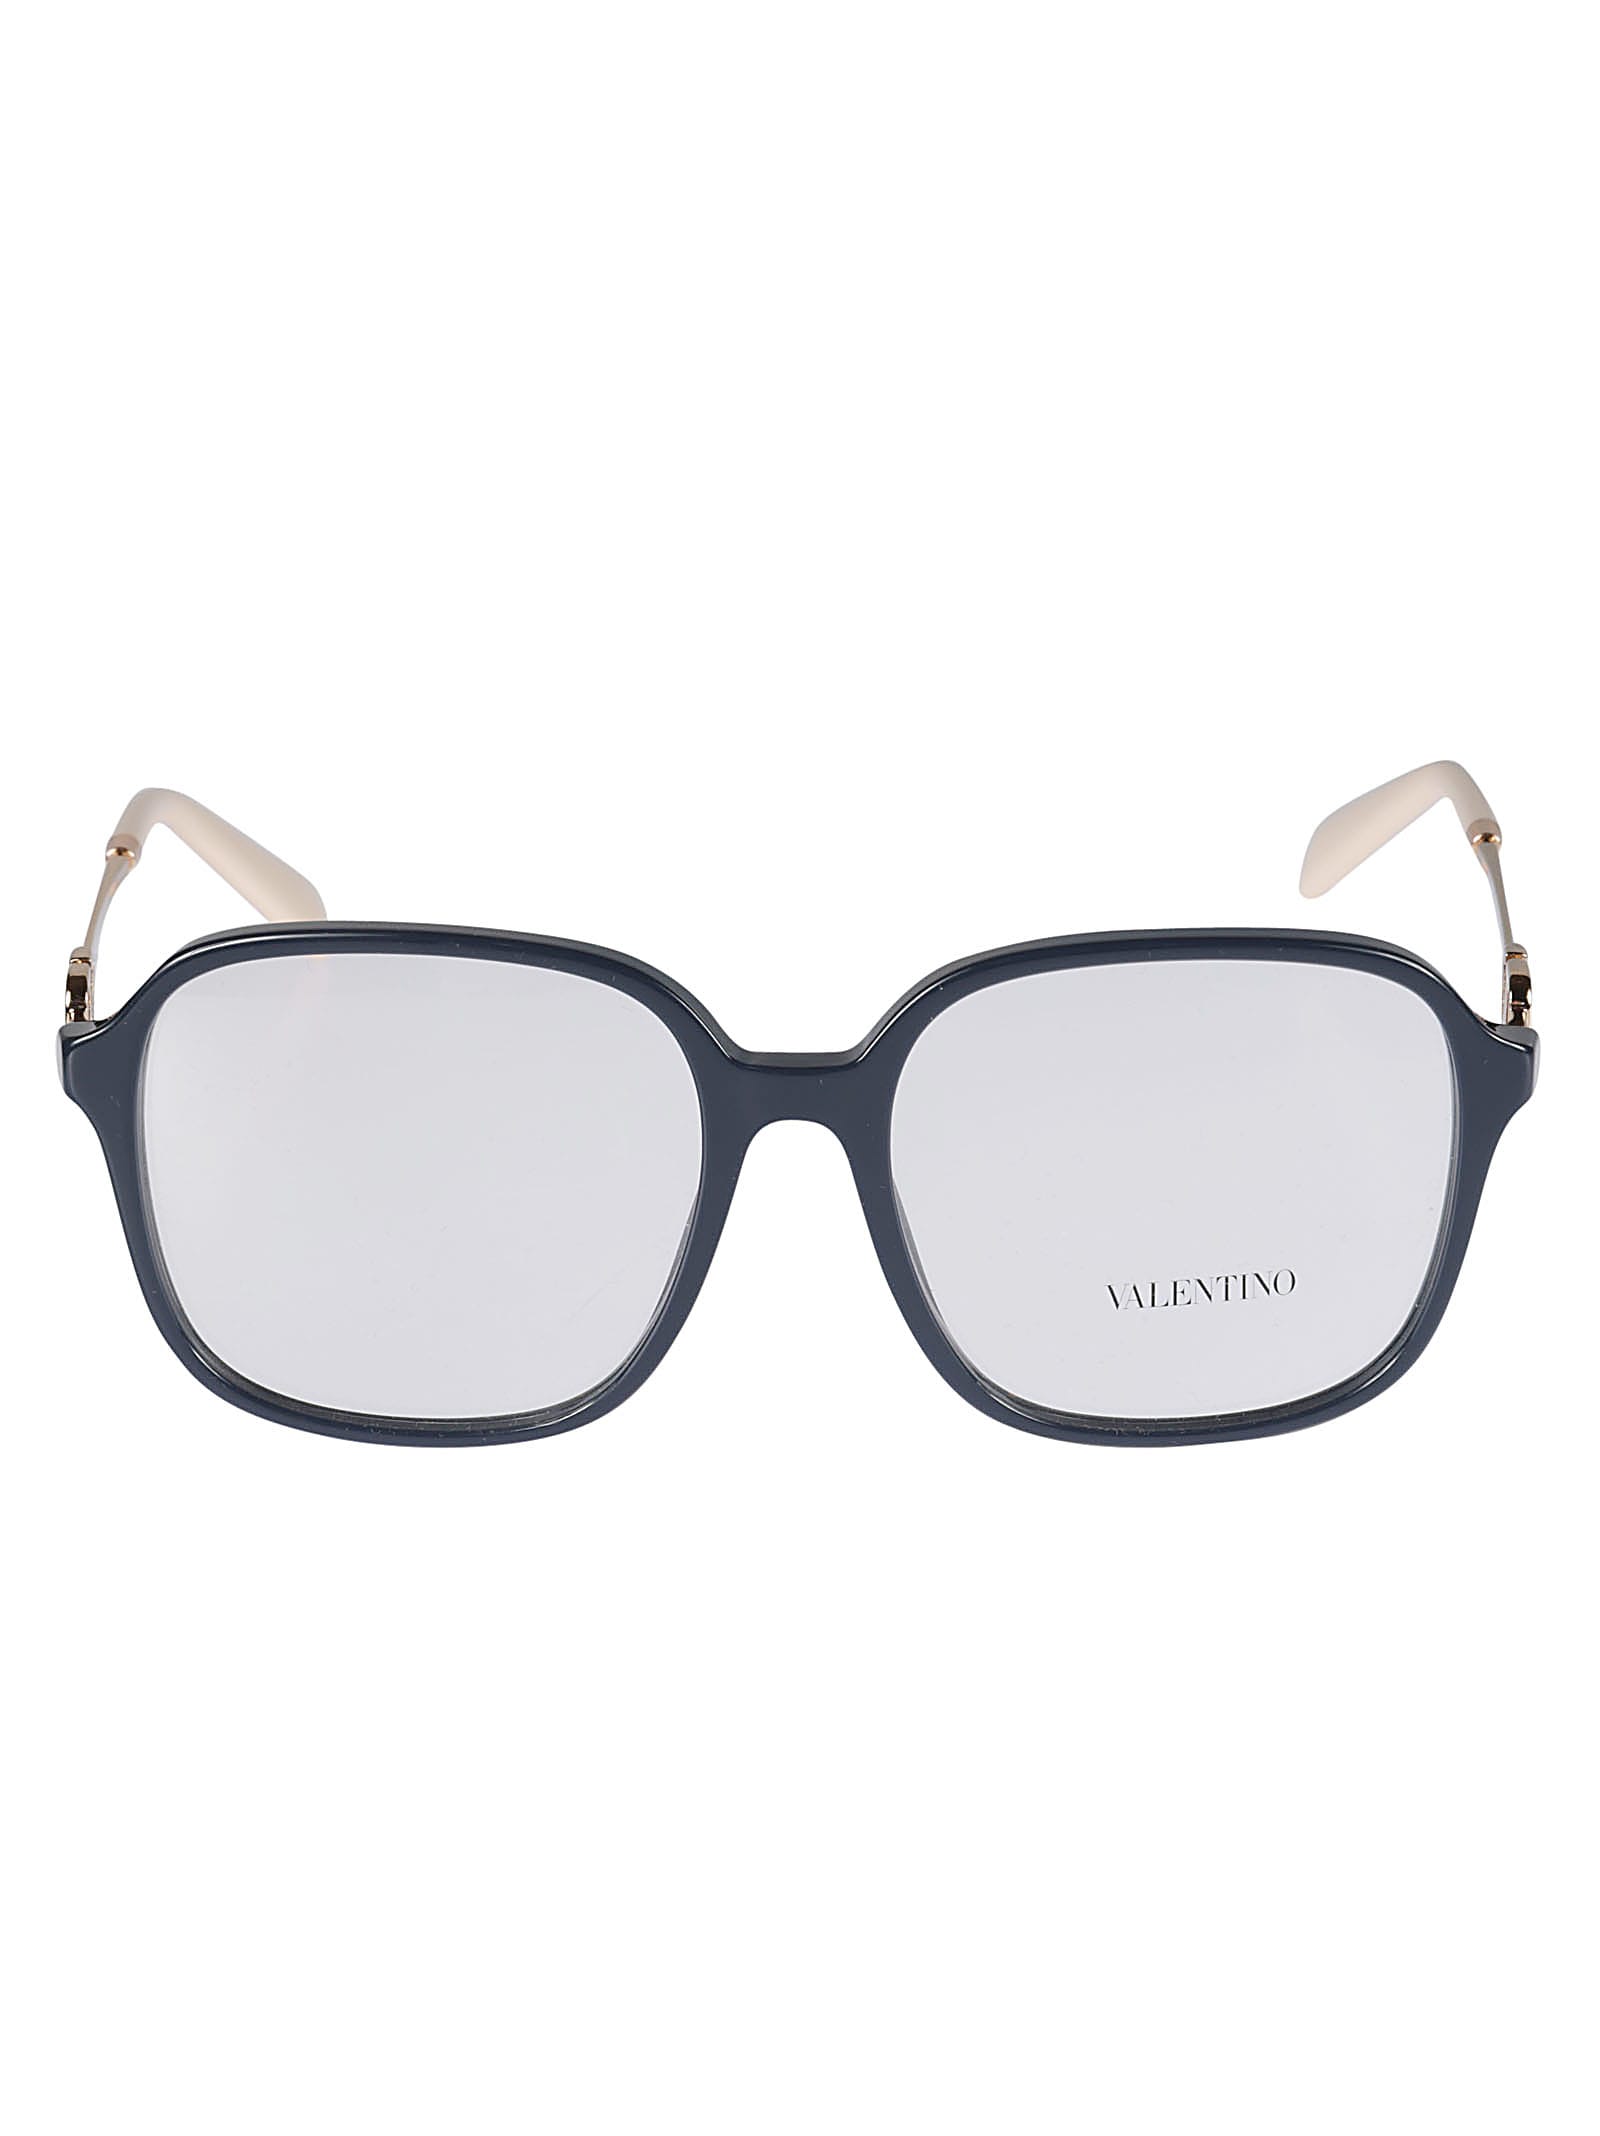 Valentino Vista5034 Glasses